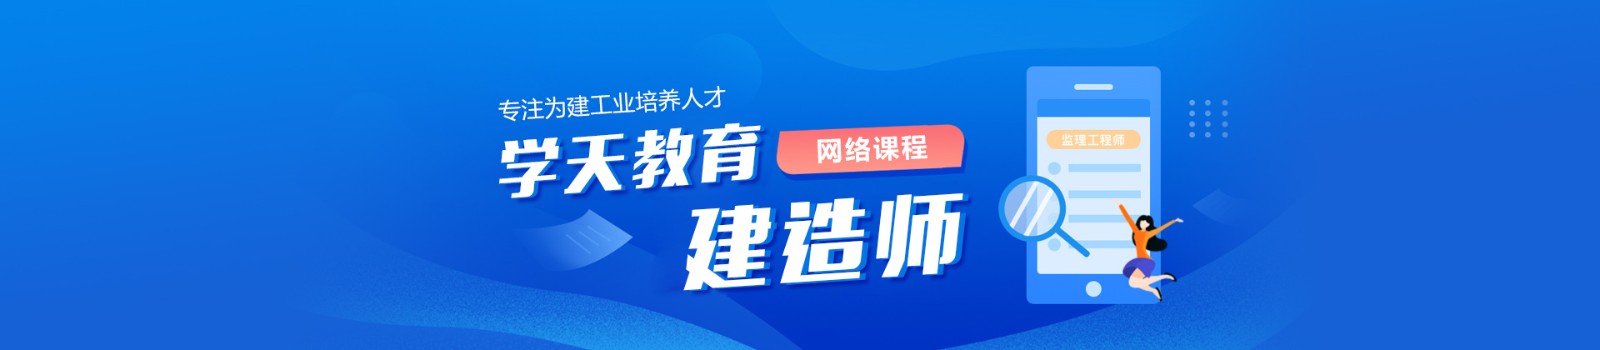 深圳学天教育 横幅广告